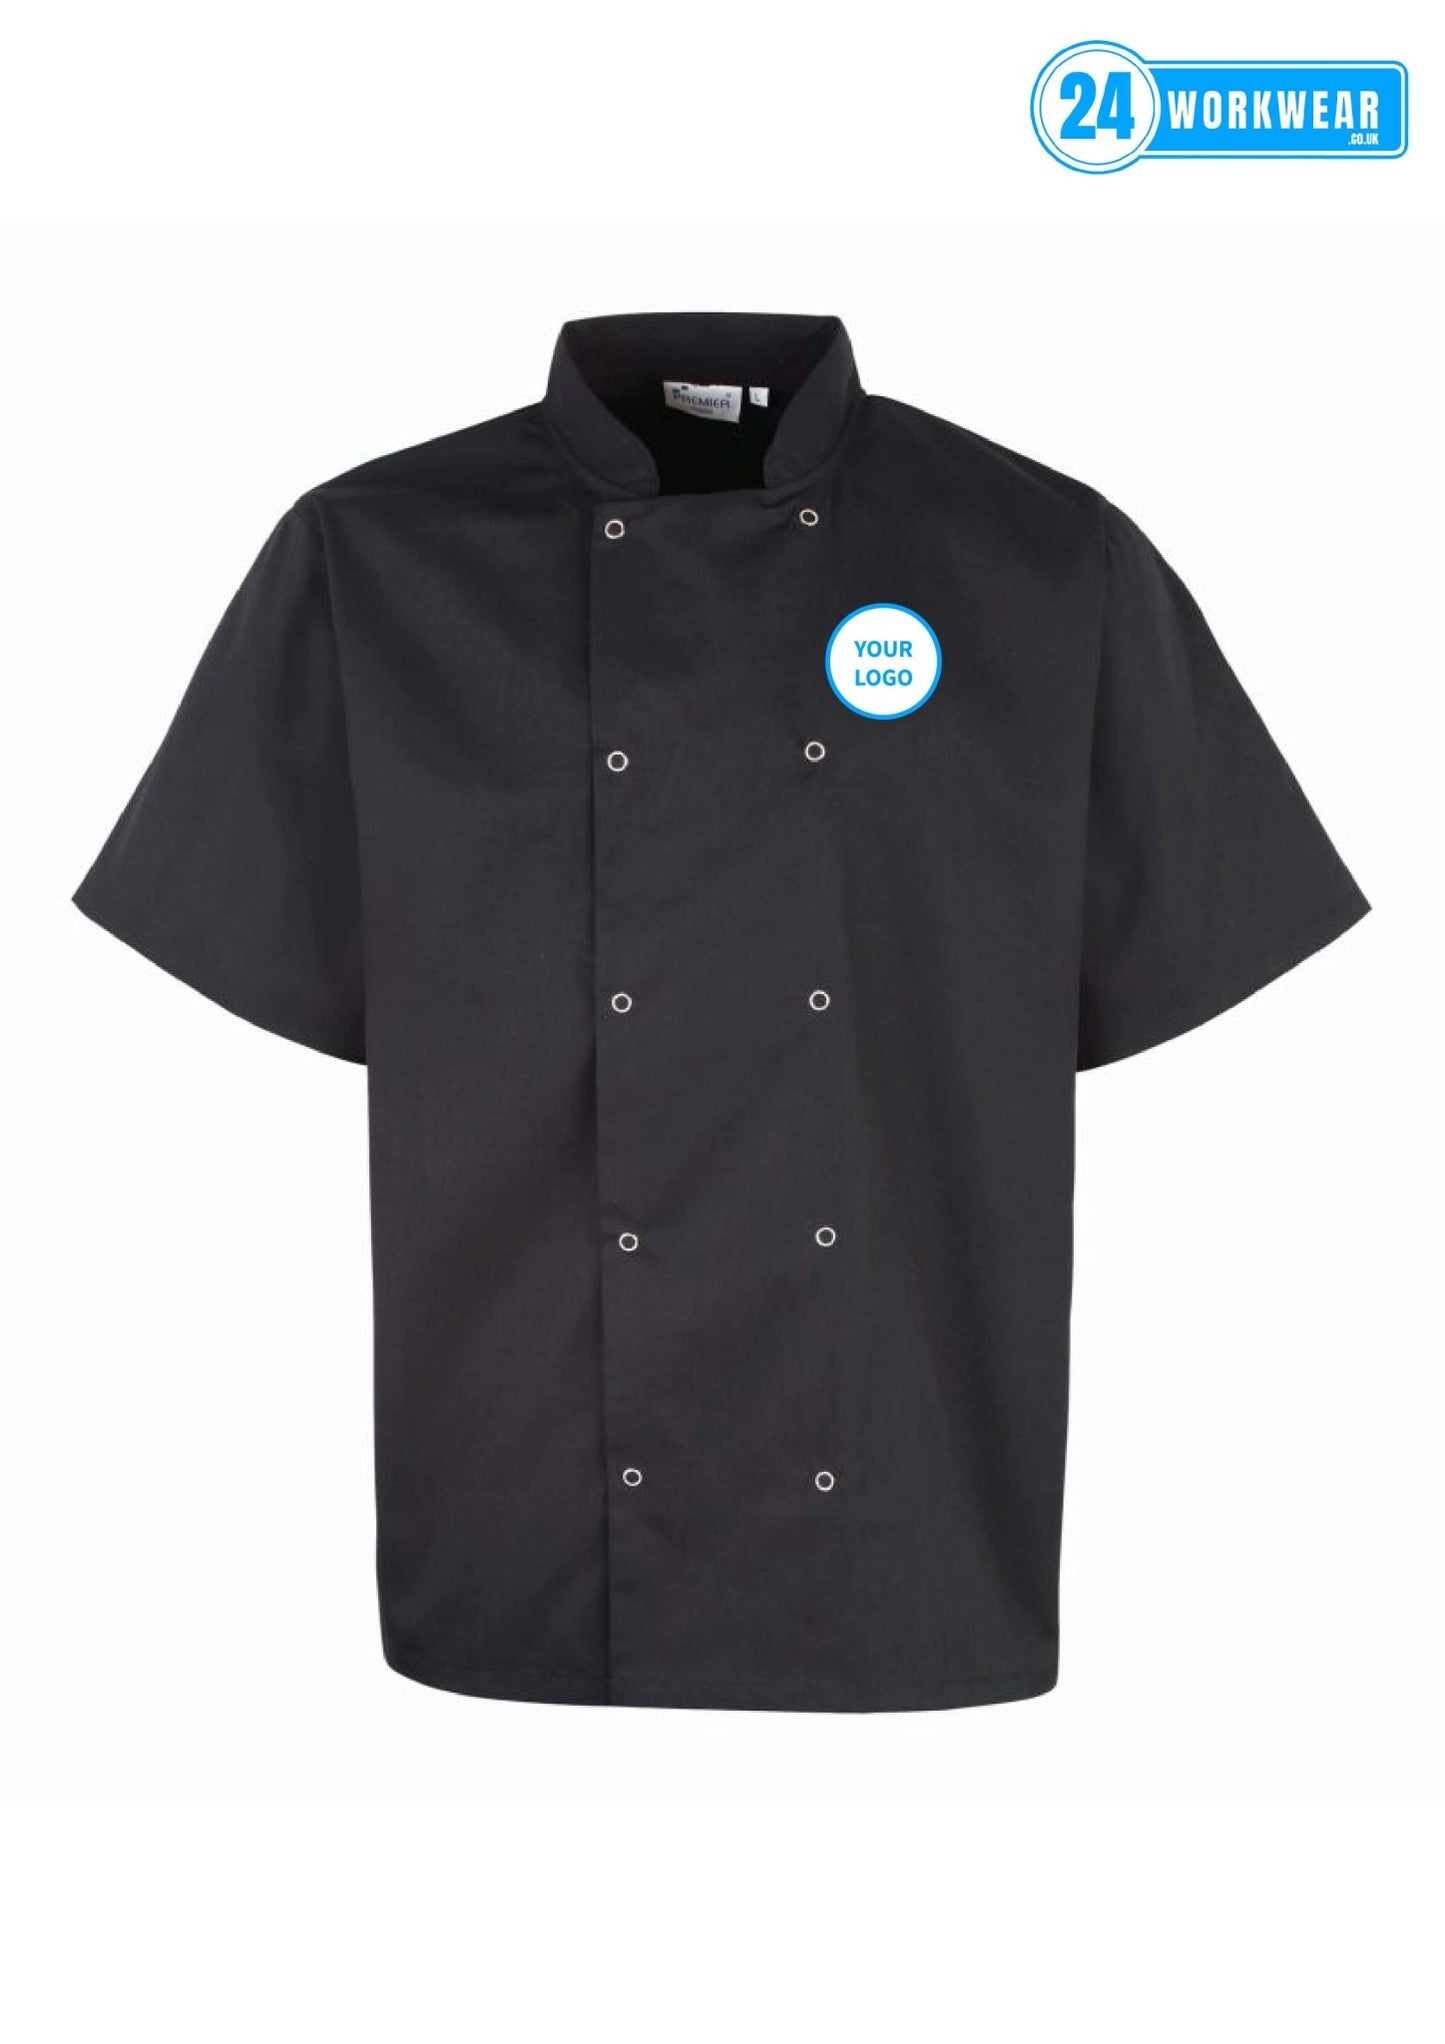 Premier Unisex Short Sleeve Stud Front Chef's Jacket - 24 Workwear - Tunic